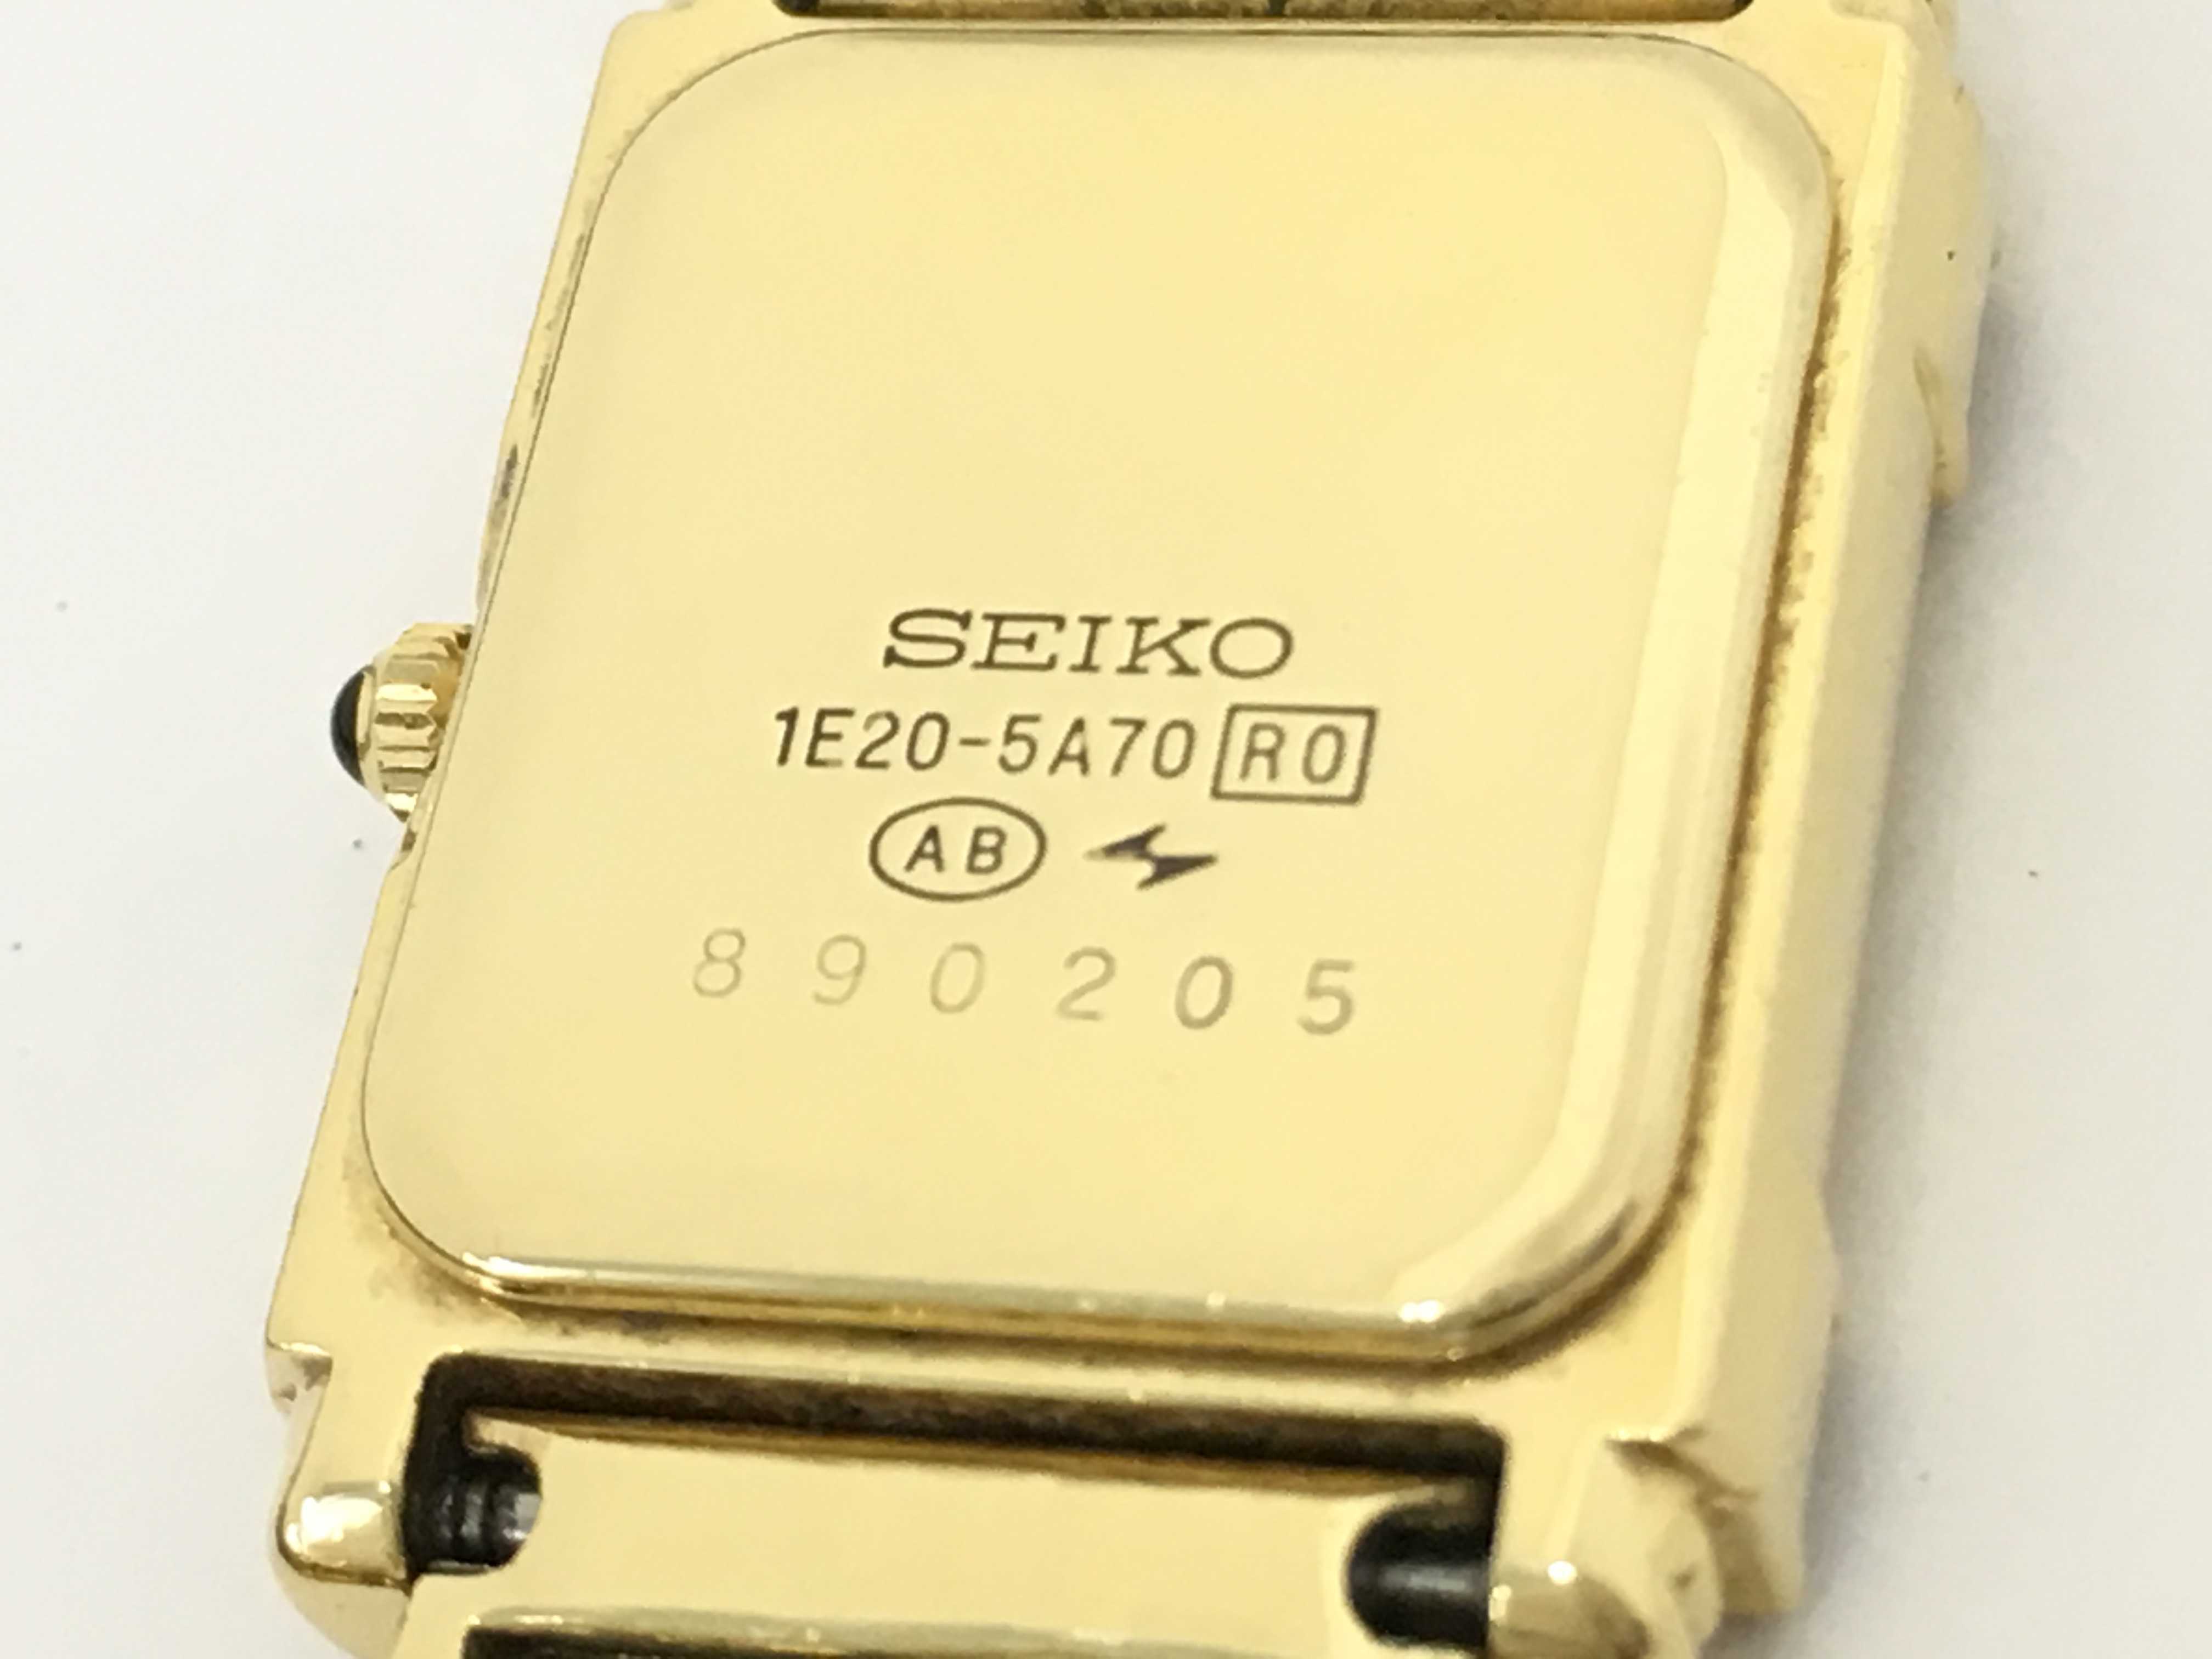 商品详情——SEIKO (1190_0463)セイコー1E20-5A70 890205 レディース腕時計